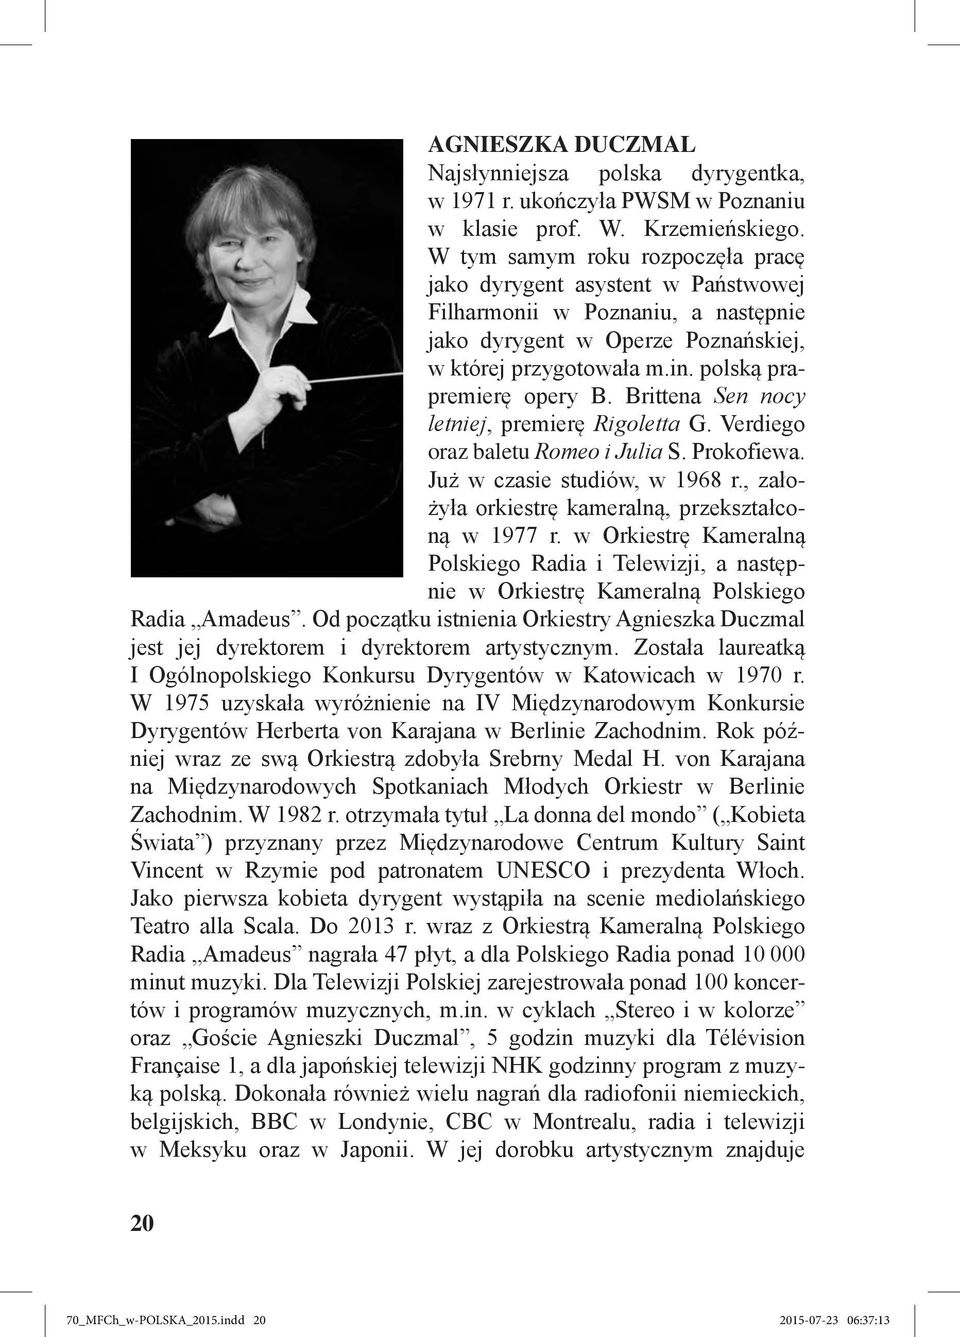 Brittena Sen nocy letniej, premierę Rigoletta G. Verdiego oraz baletu Romeo i Julia S. Prokofiewa. Już w czasie studiów, w 1968 r., założyła orkiestrę kameralną, przekształconą w 1977 r.